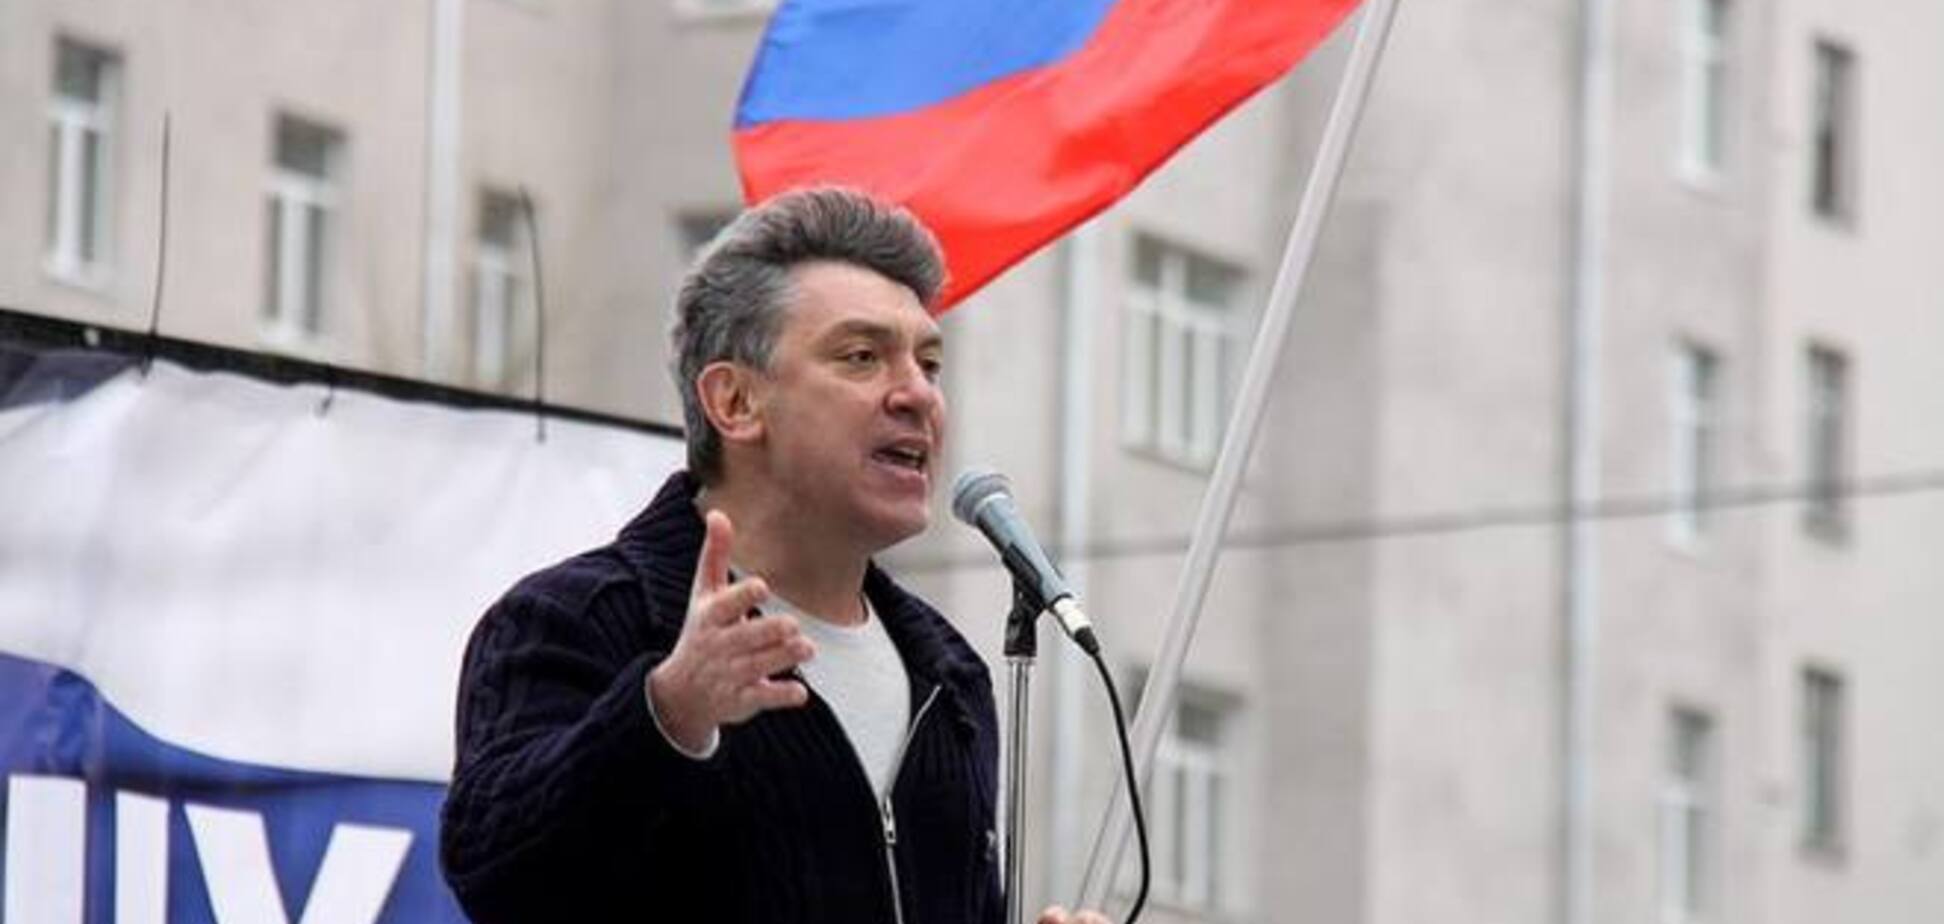 Следком РФ не стал возбуждать уголовное дело против Немцова, назвавшего Путина 'е***тым'